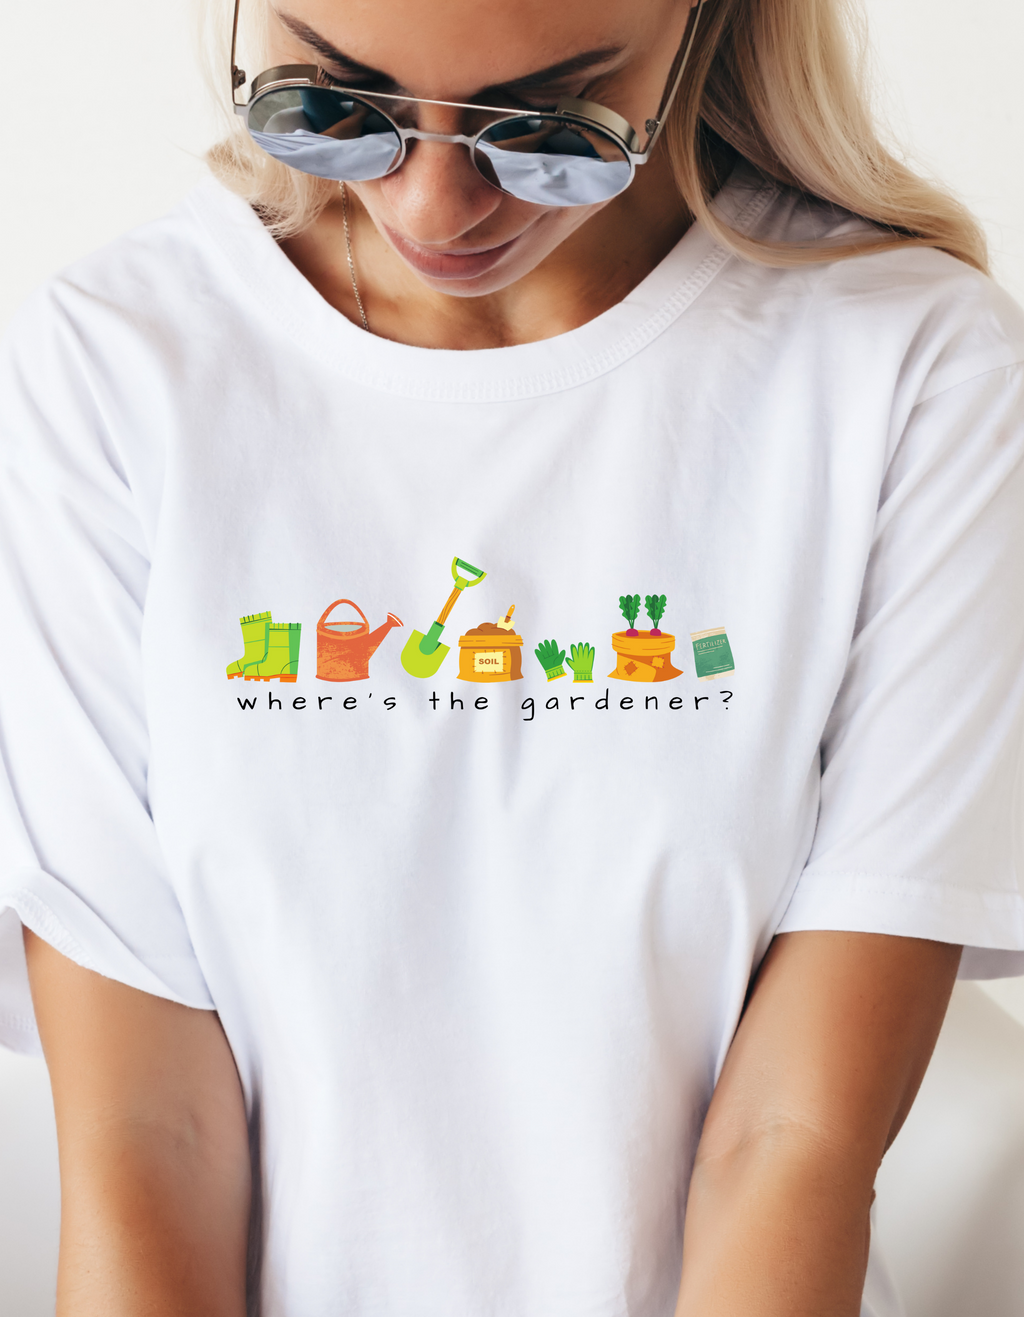 GARDENER Tshirt with gardening essentials in lively minimalist graphic design